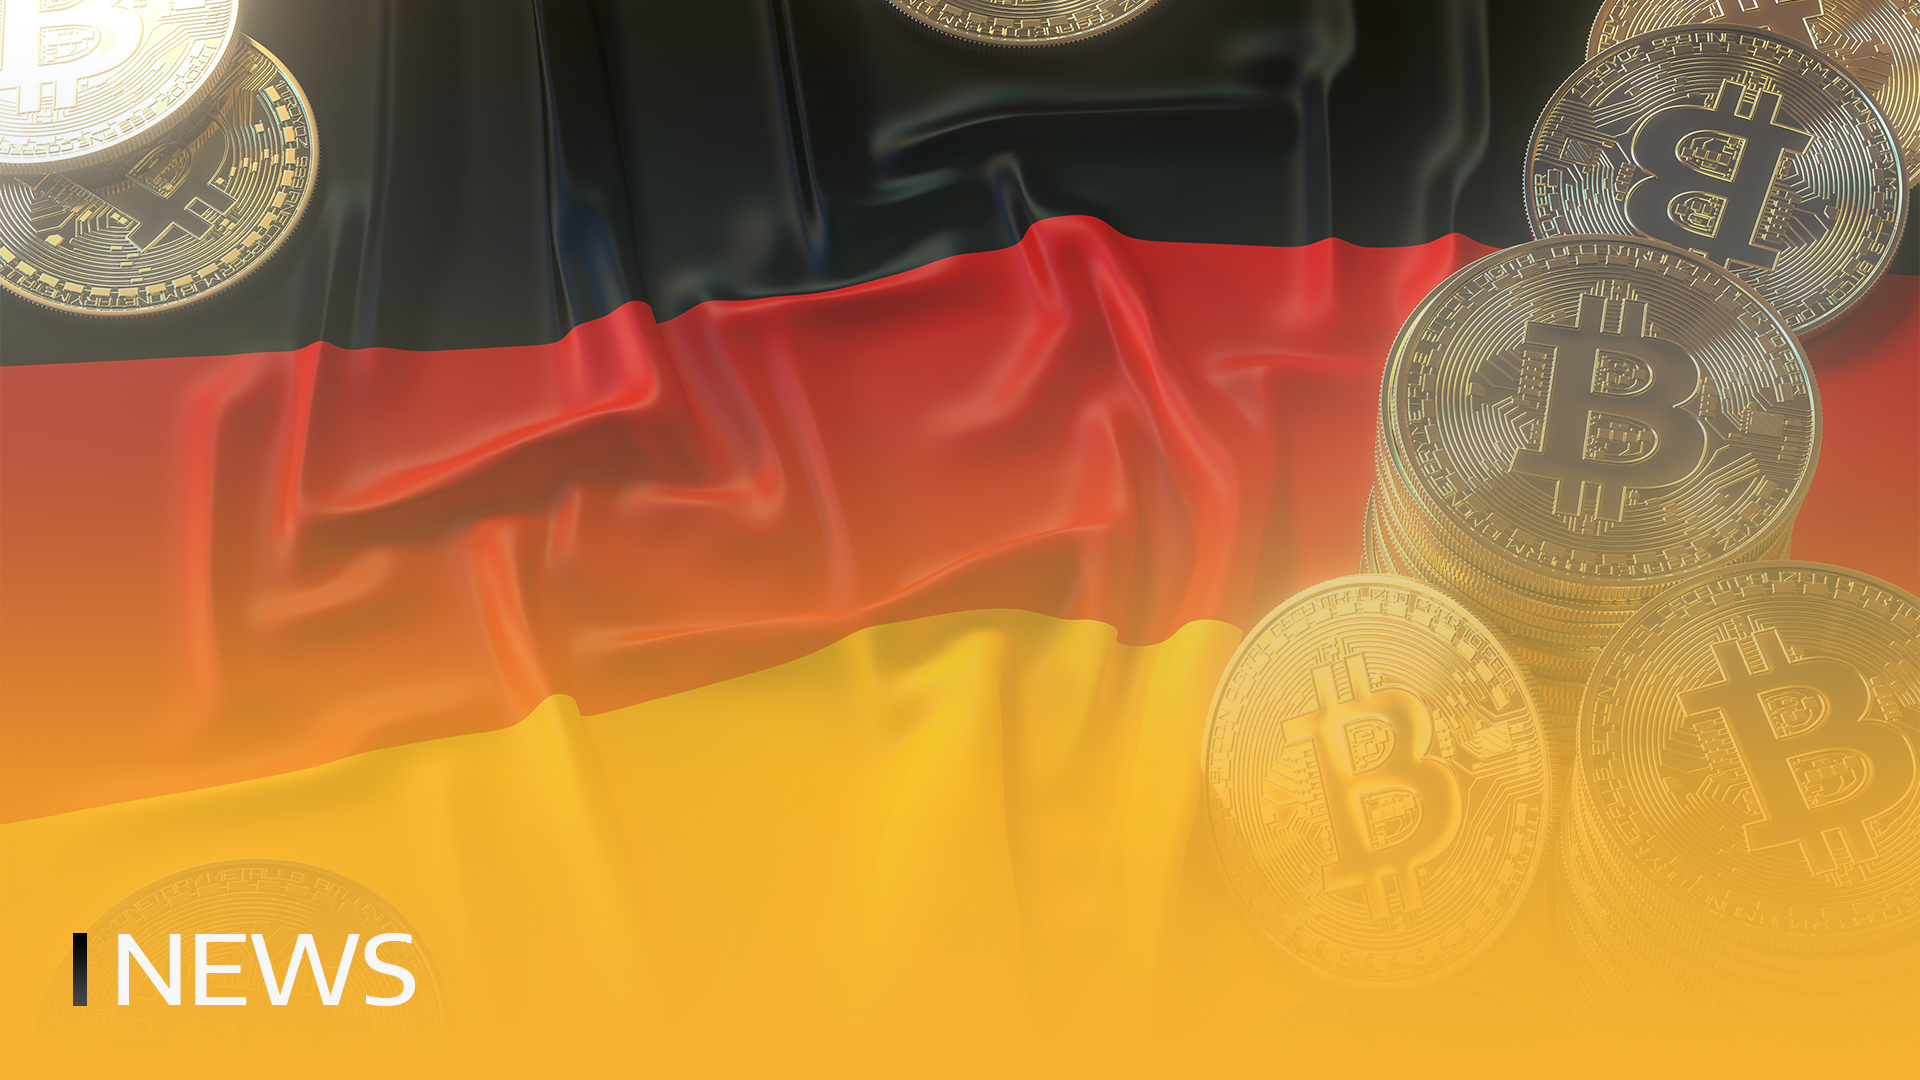 La vente de bitcoins par le gouvernement allemand rapporte 2,8 milliards de dollars